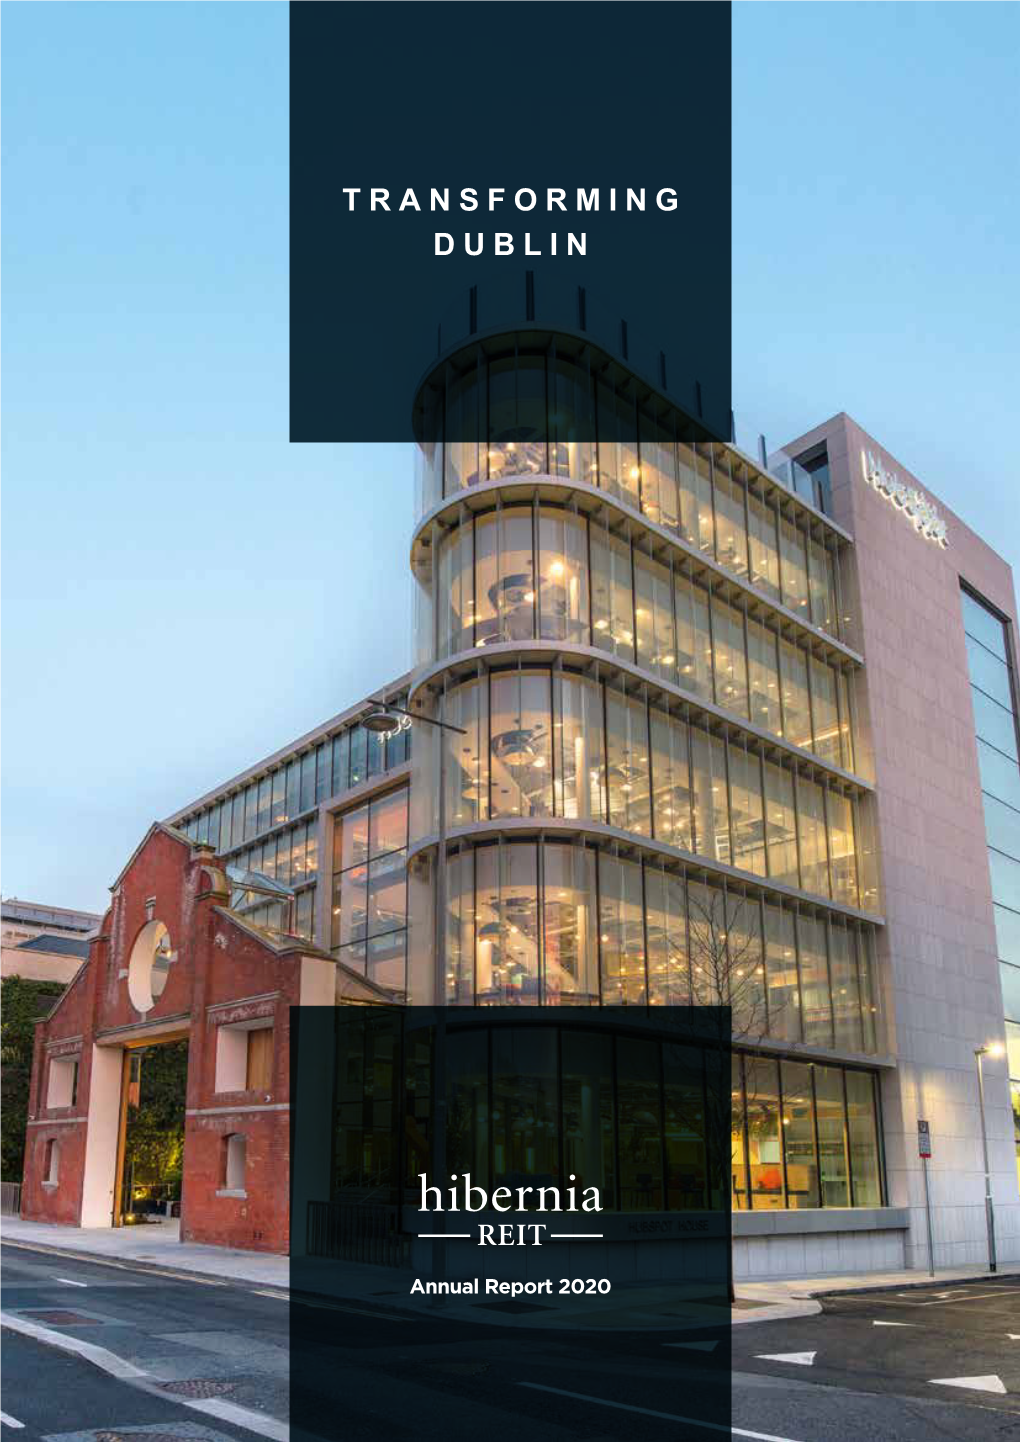 Annual Report 2020 DUBLIN